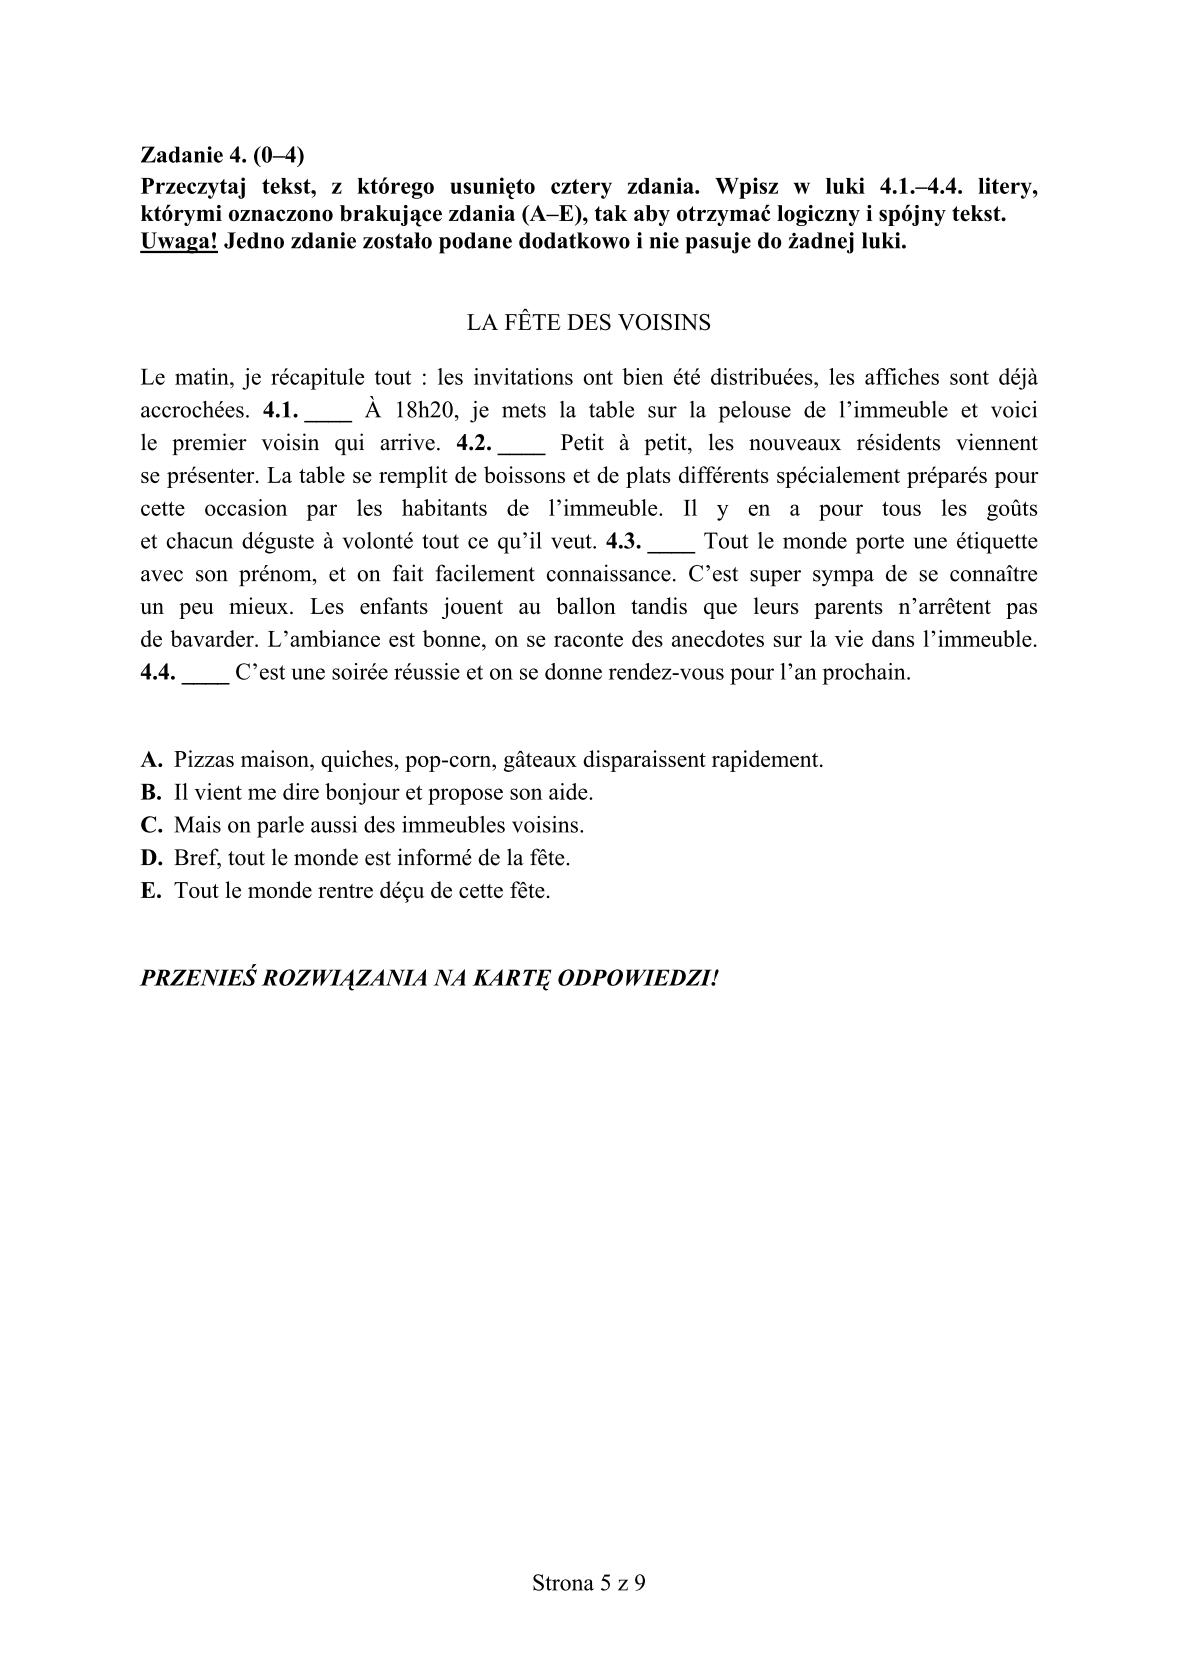 pytania-francuski-poziom-rozszerzony-egzamin-gimnazjalny-25.04.2014-5